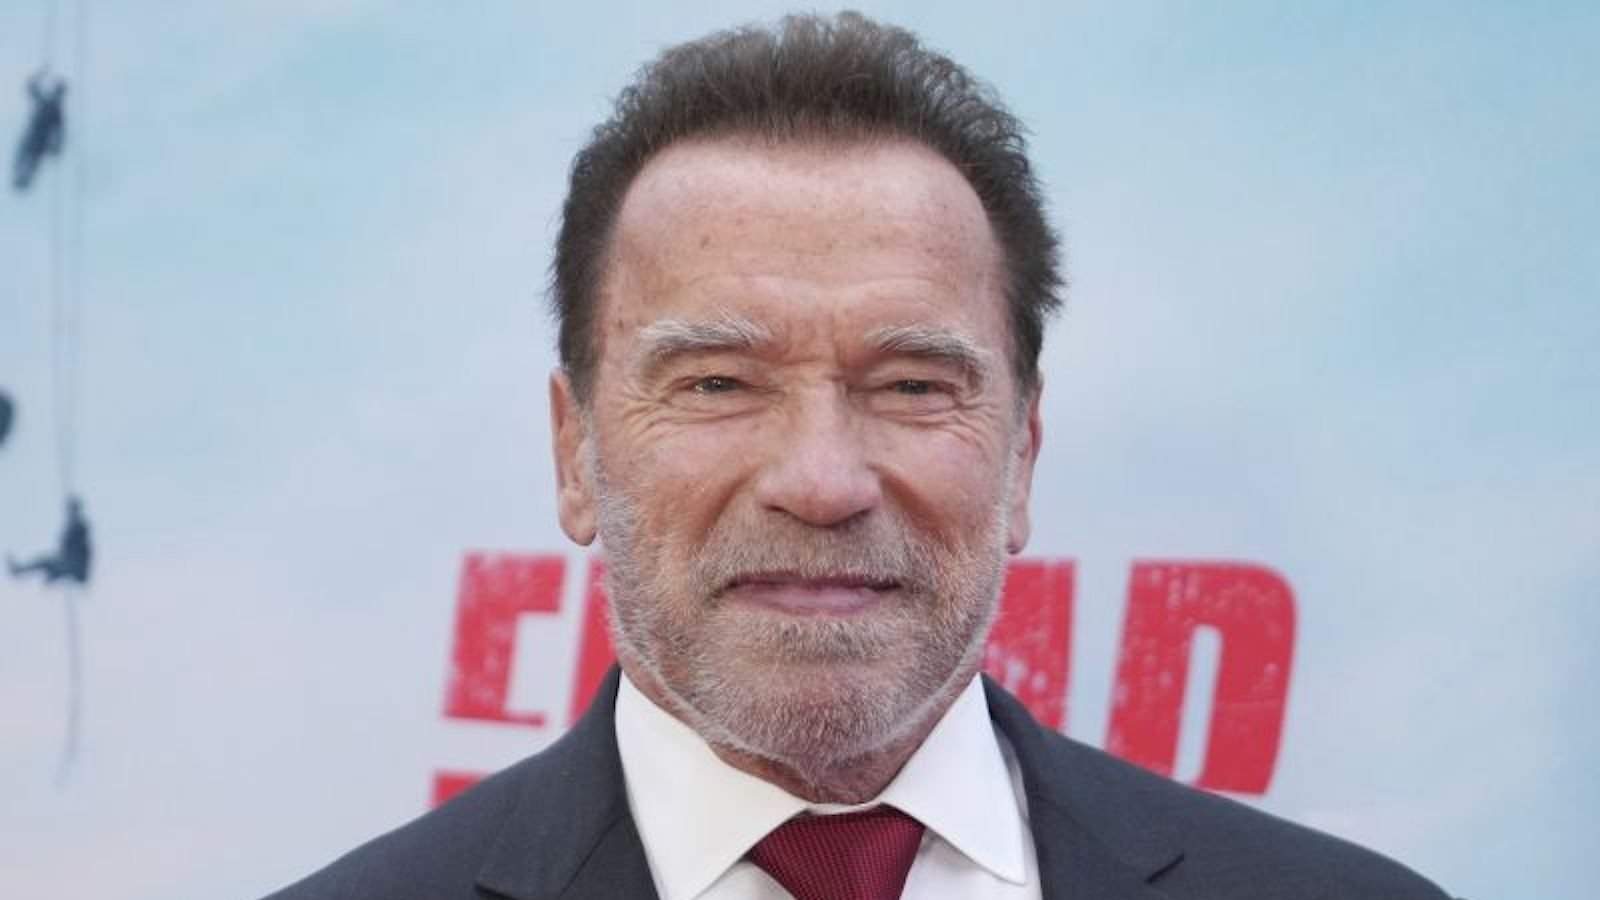 El moment més incòmode que hem vist d'Arnold Schwarzenegger